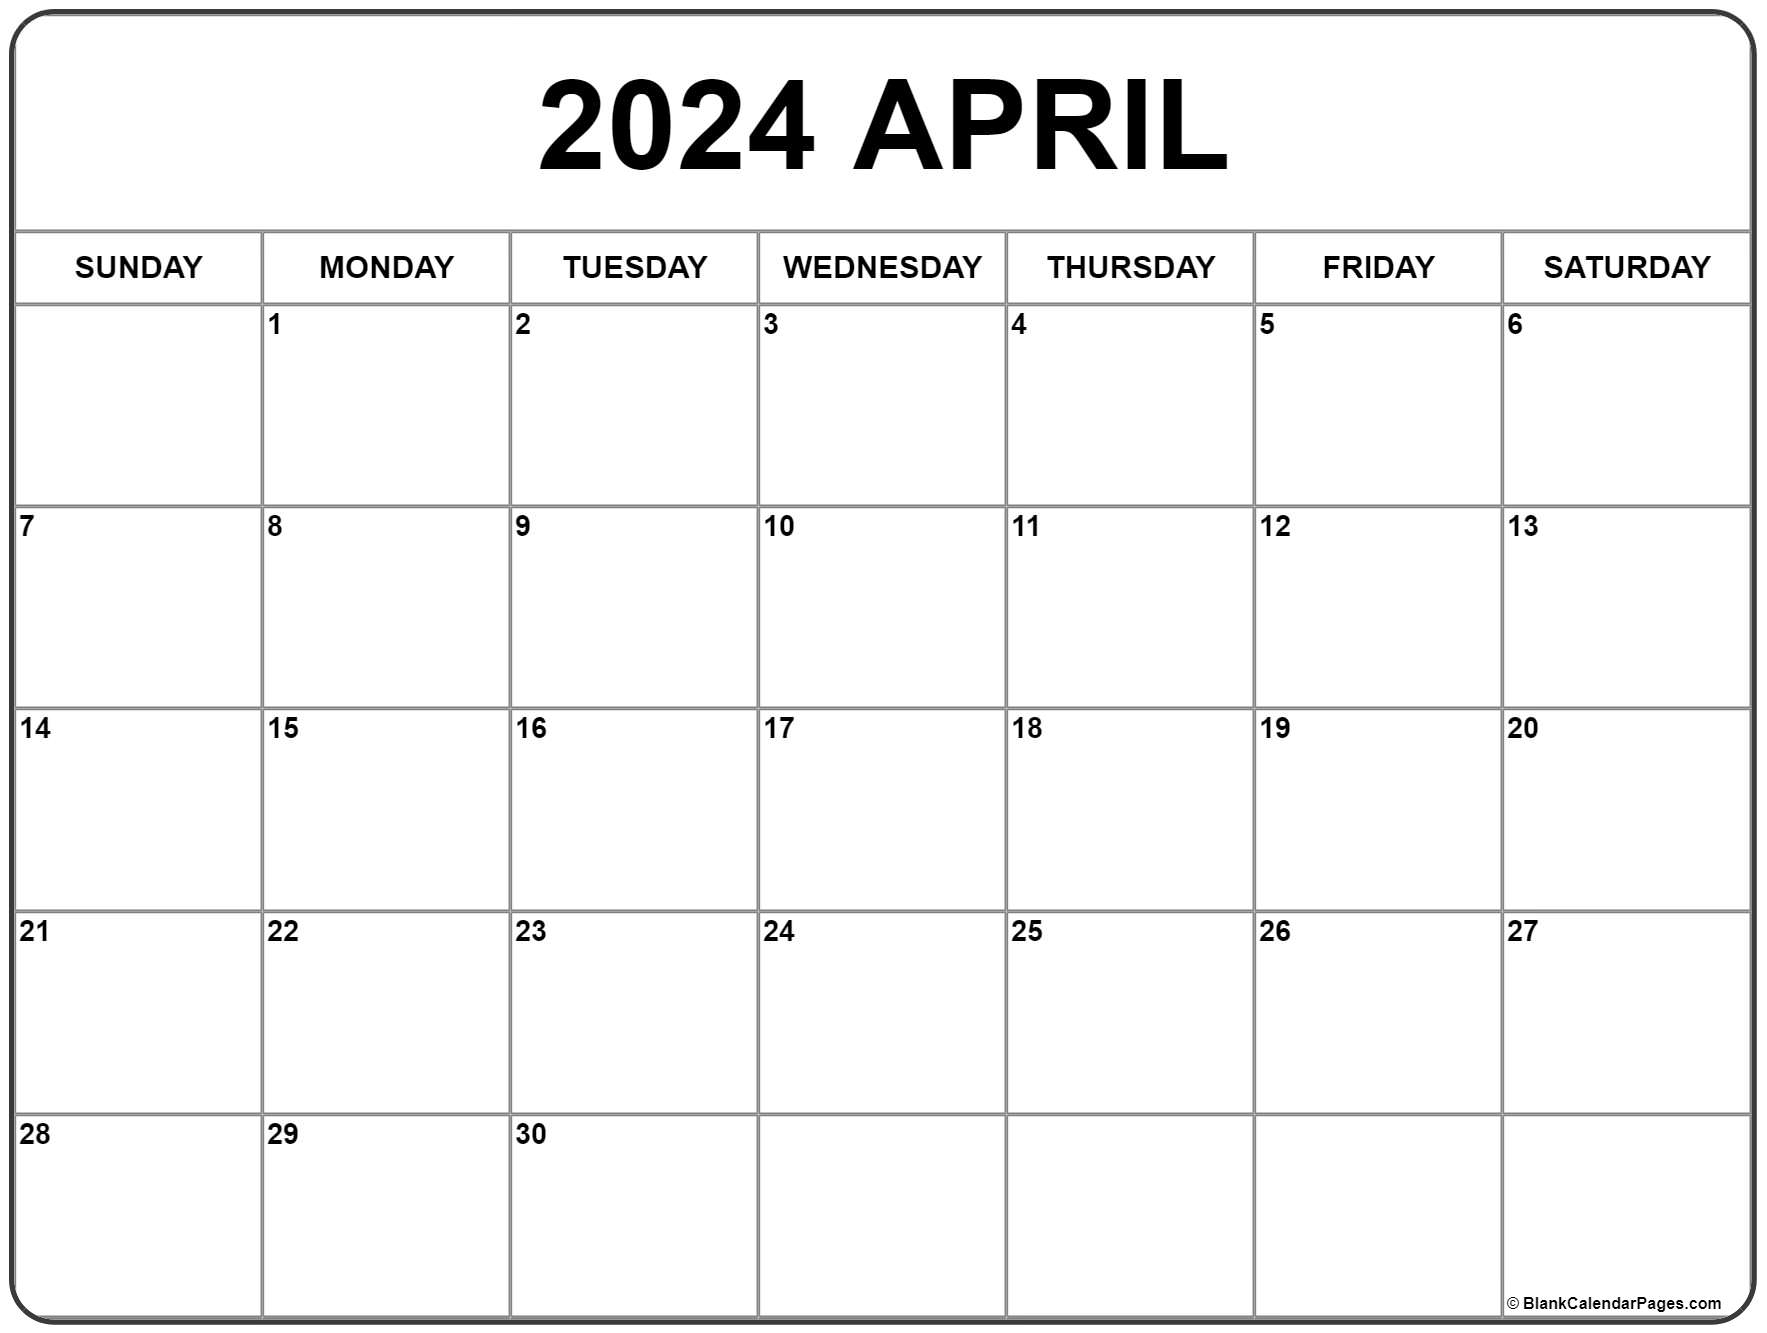 April 2024 Calendar | Free Printable Calendar for Blank Calendar April 2024 Free Printable